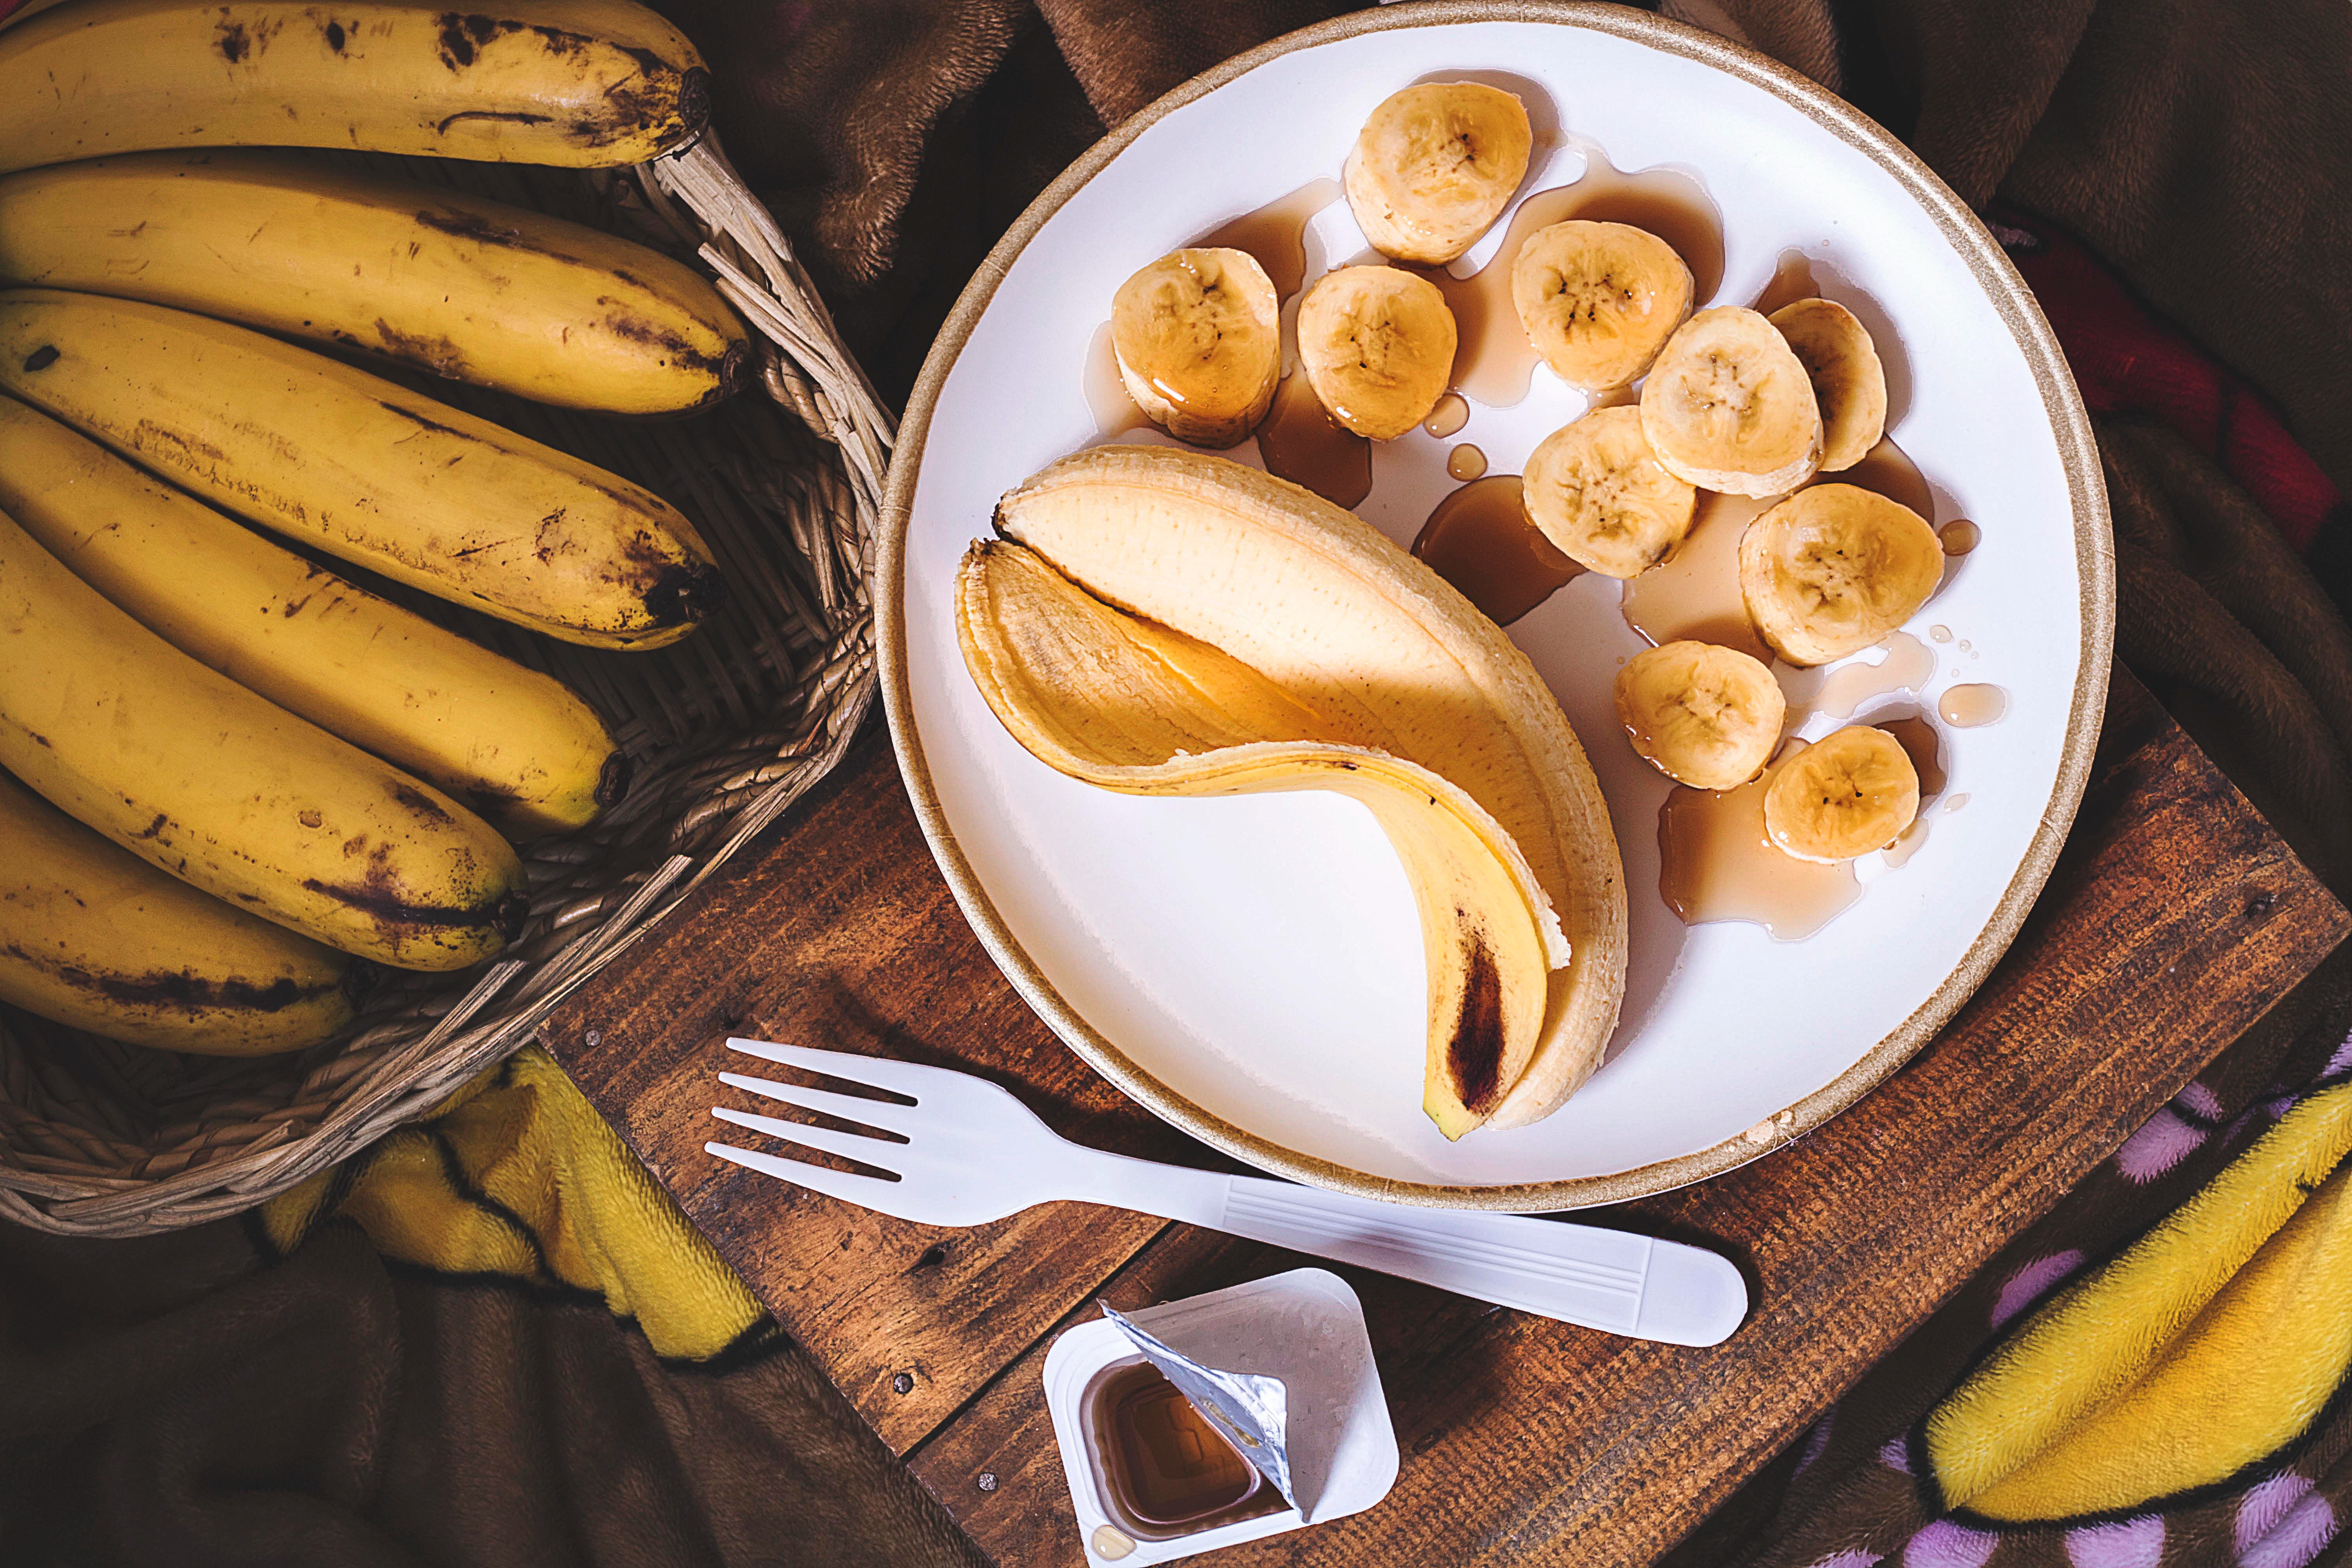 Plate of bananas